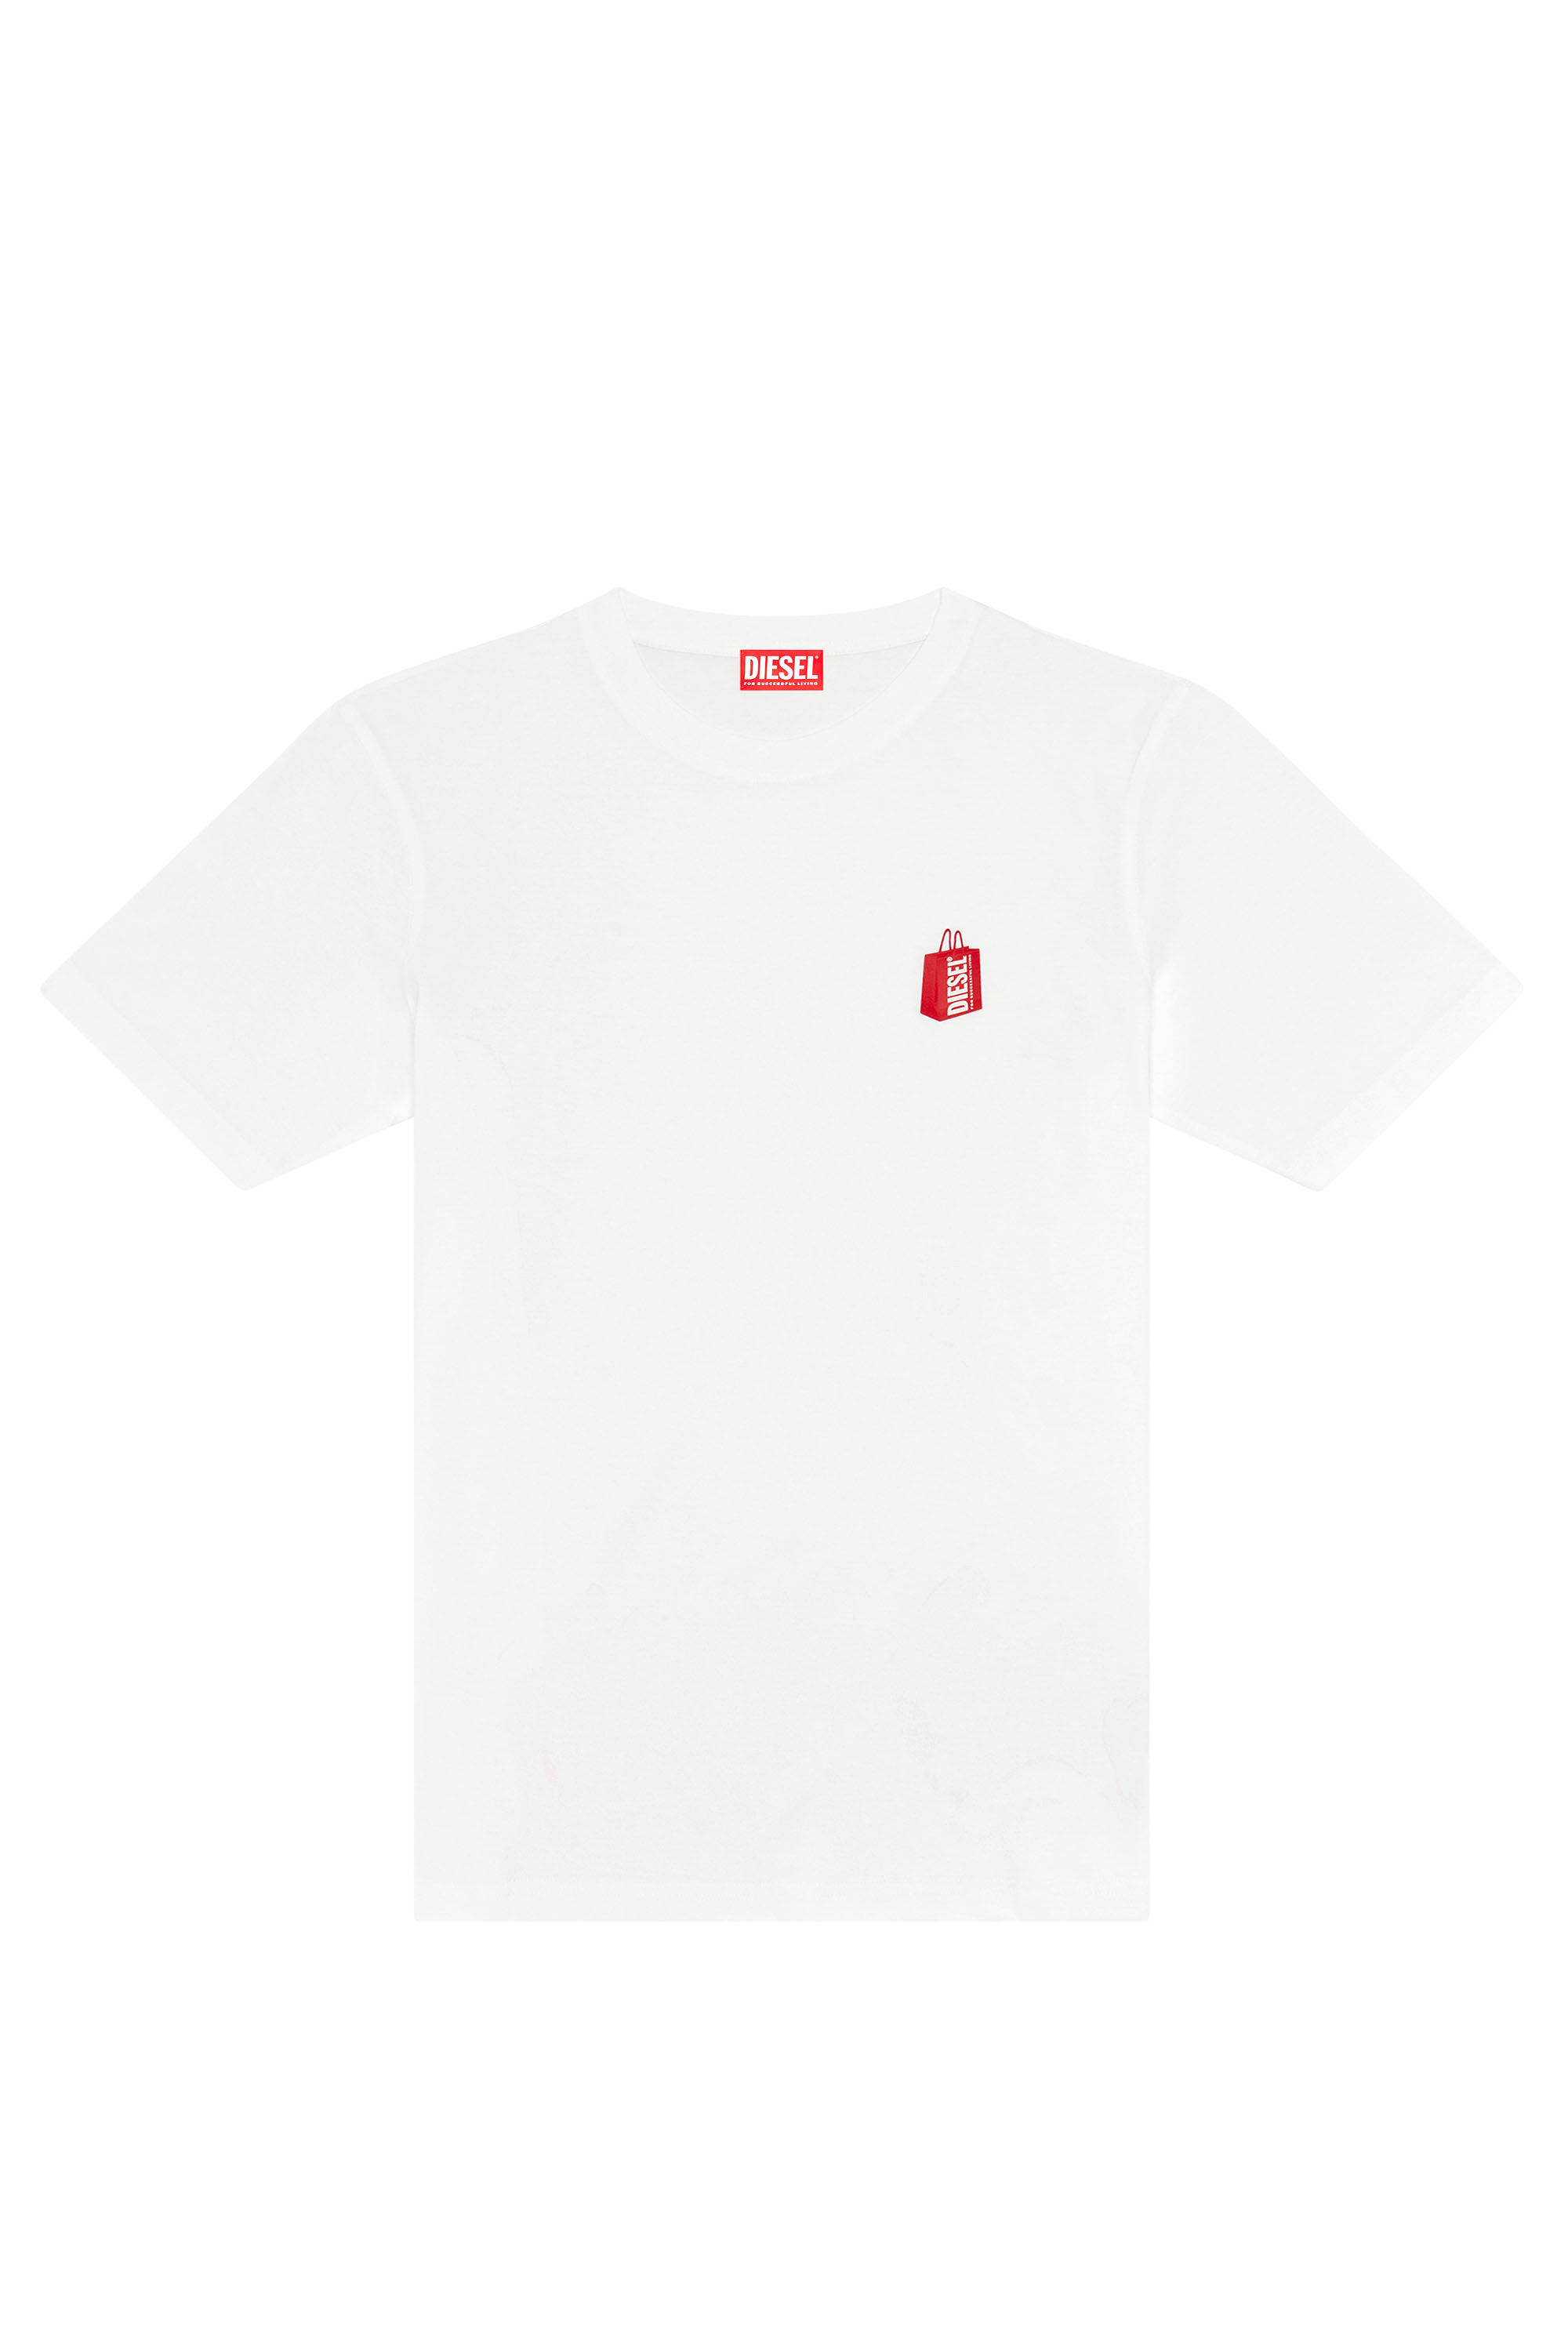 Diesel - T-JUST-N18, Man T-shirt with Diesel bag print in White - Image 2